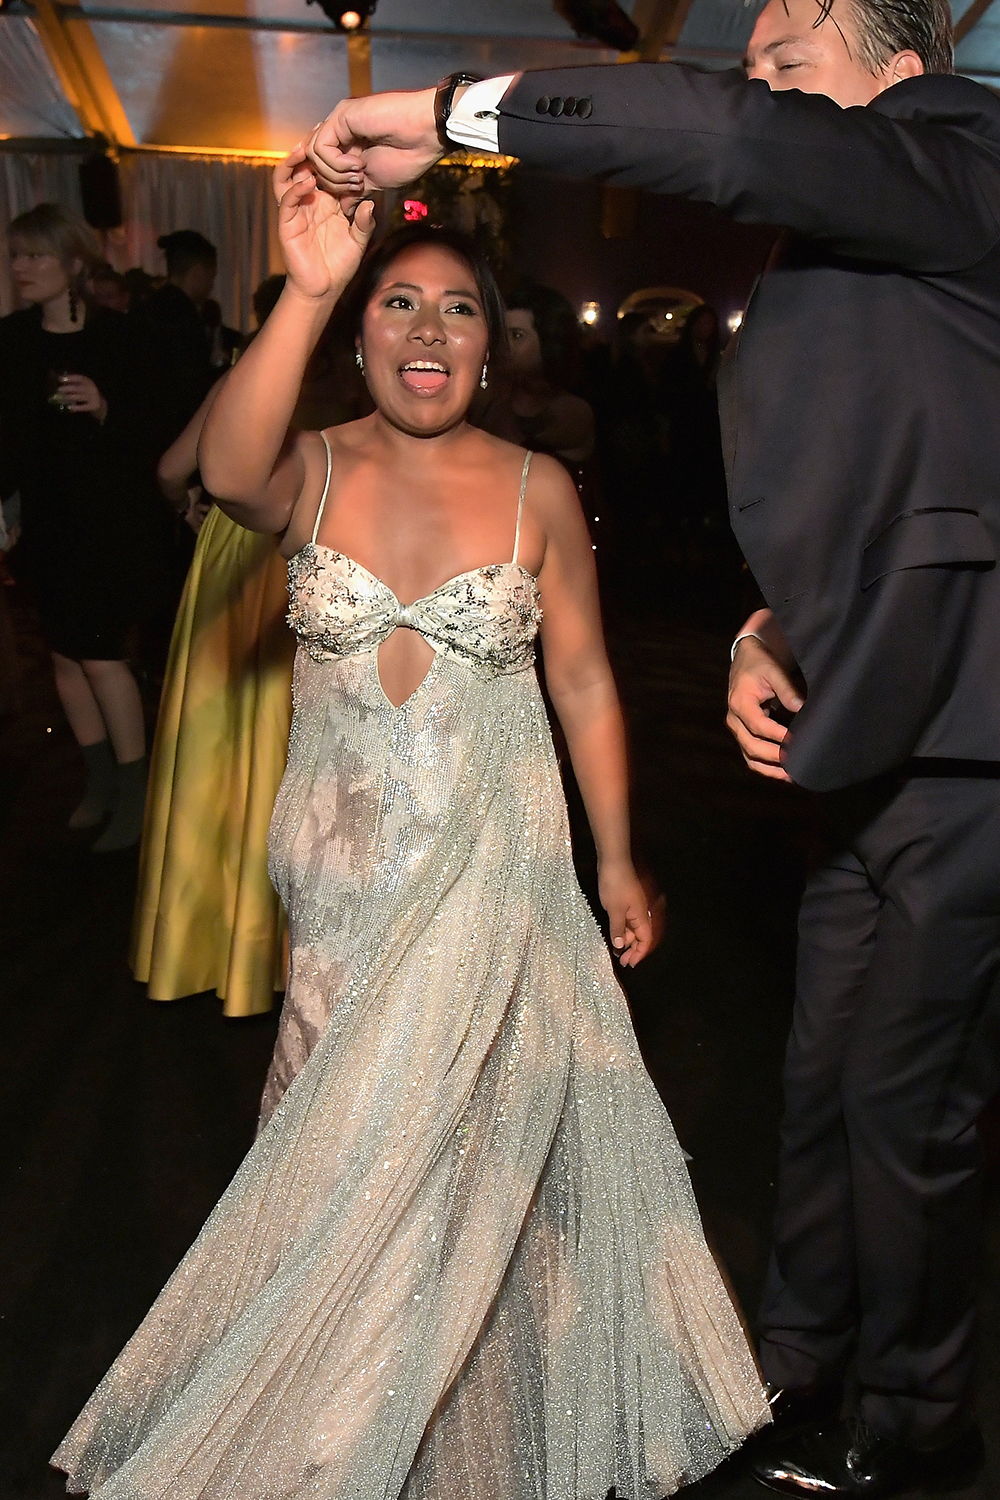 Colegiala, colegiala: Yalitza Aparicio se roba la atención en los Golden Globes bailando cumbia